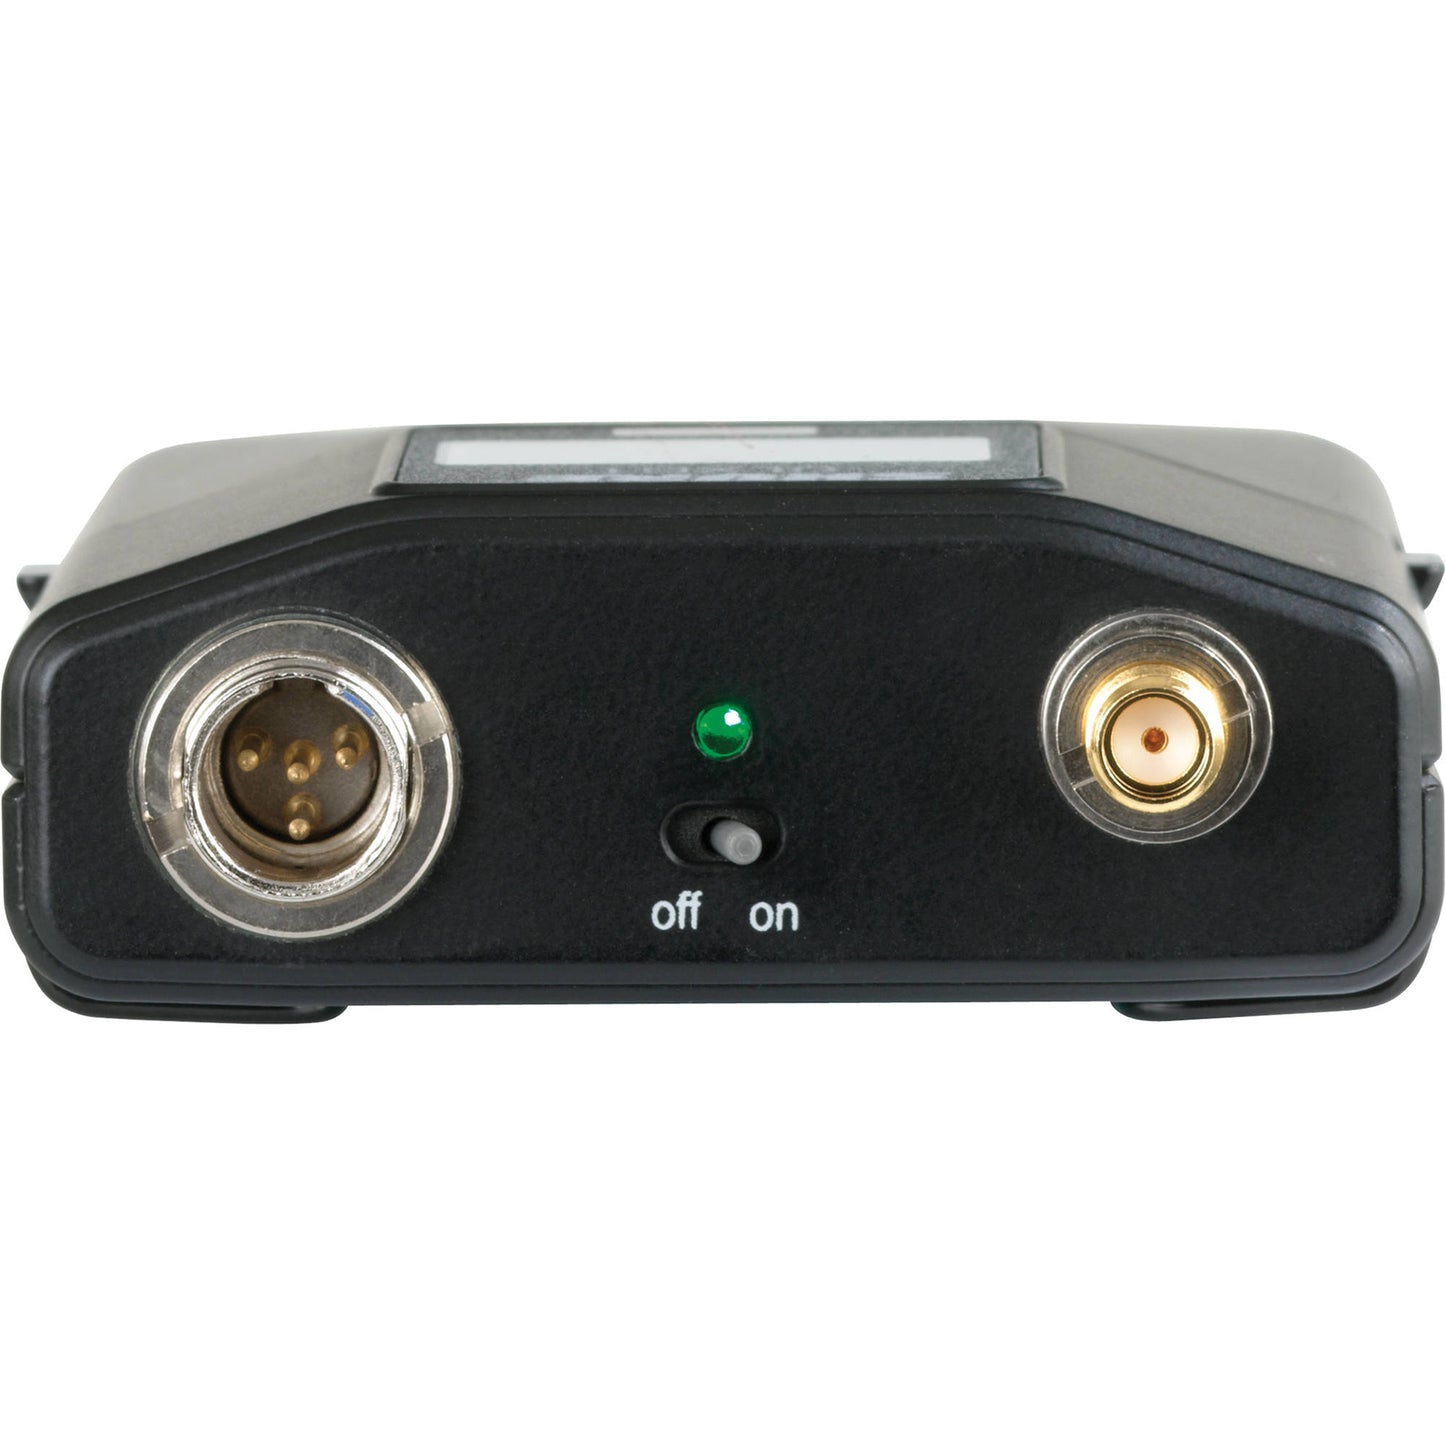 Shure ULXD1 Wireless Bodypack Transmitter - G50 Band